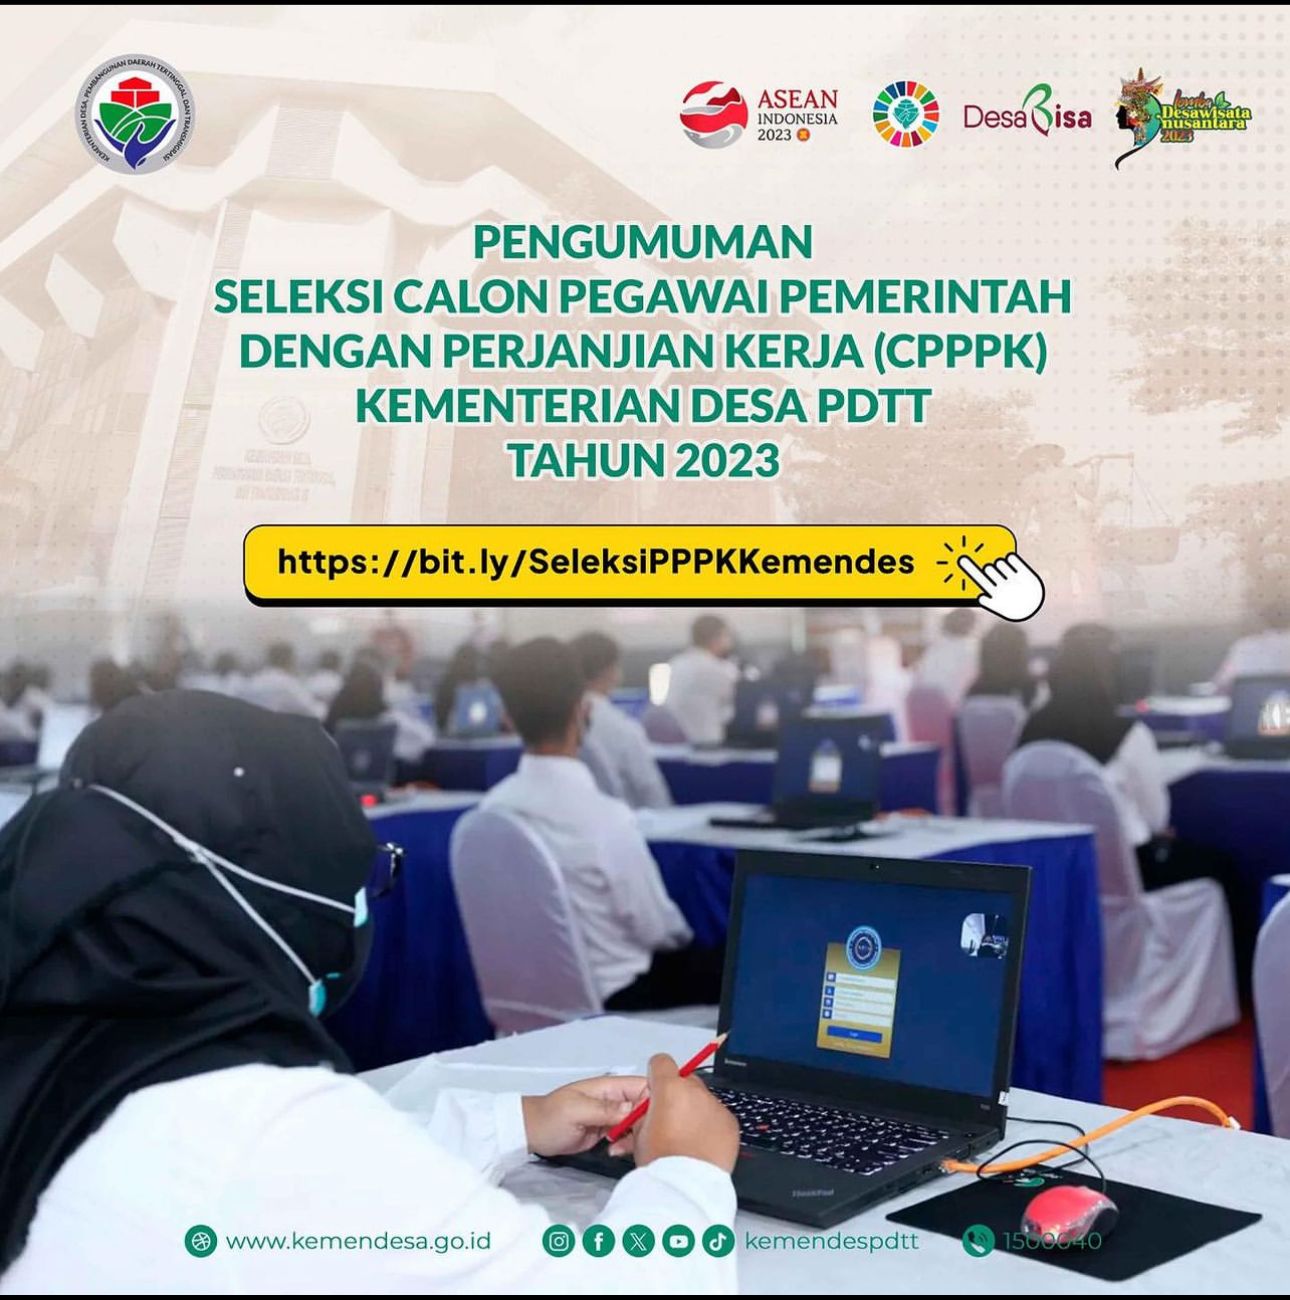 Kementerian Desa PDTT Buka Lowong 99 Formasi PPPK, Cek Persyaratan, Tata Cara Daftar dan Alokasi Formasi